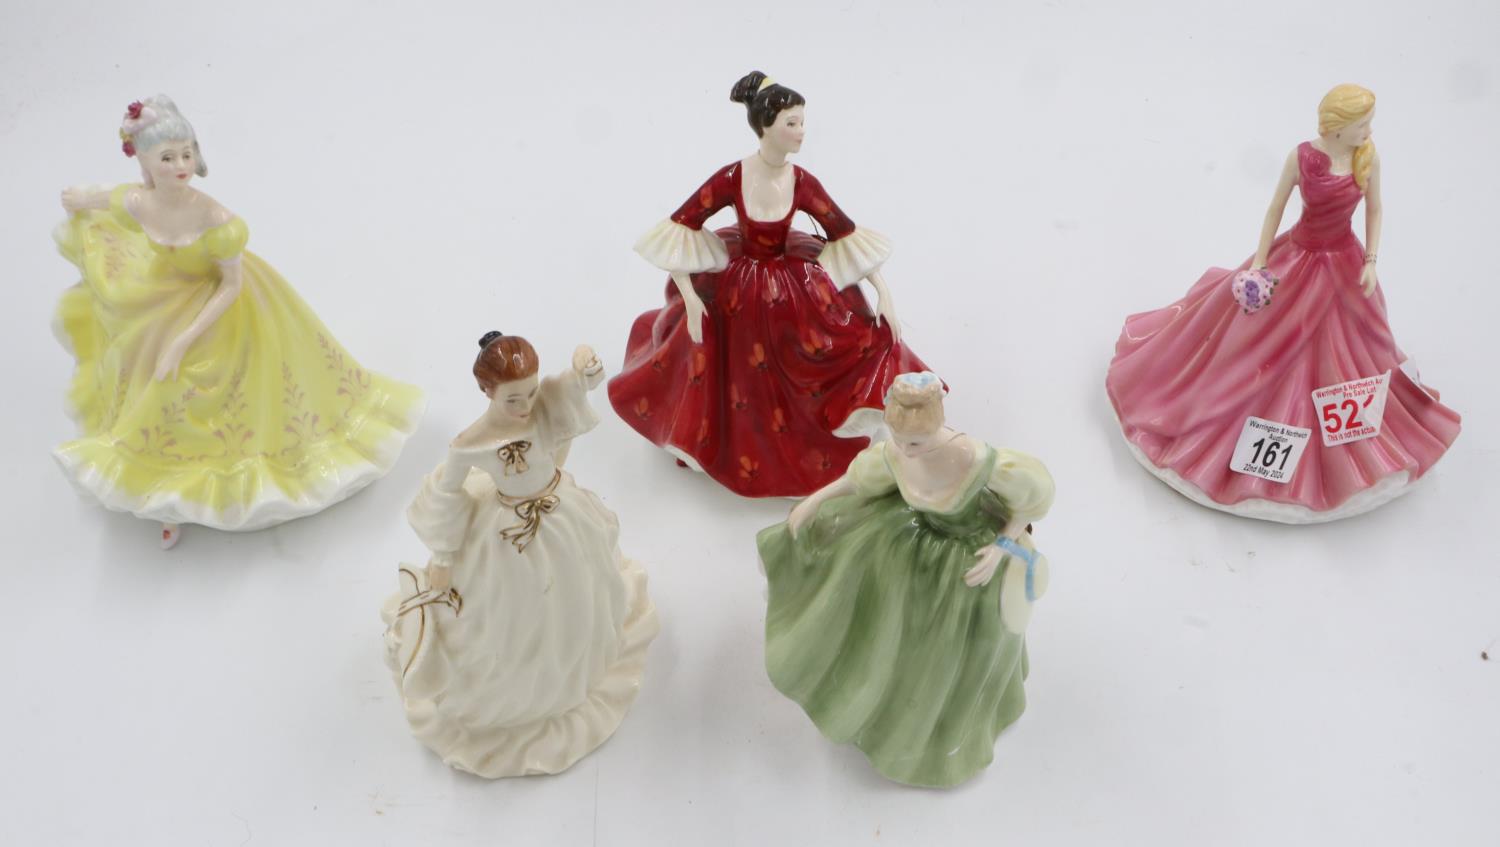 Five Royal Doulton figurines, 1st quality, no damages, largest H: 21 cm, smallest H: 19 cm. UK P&P